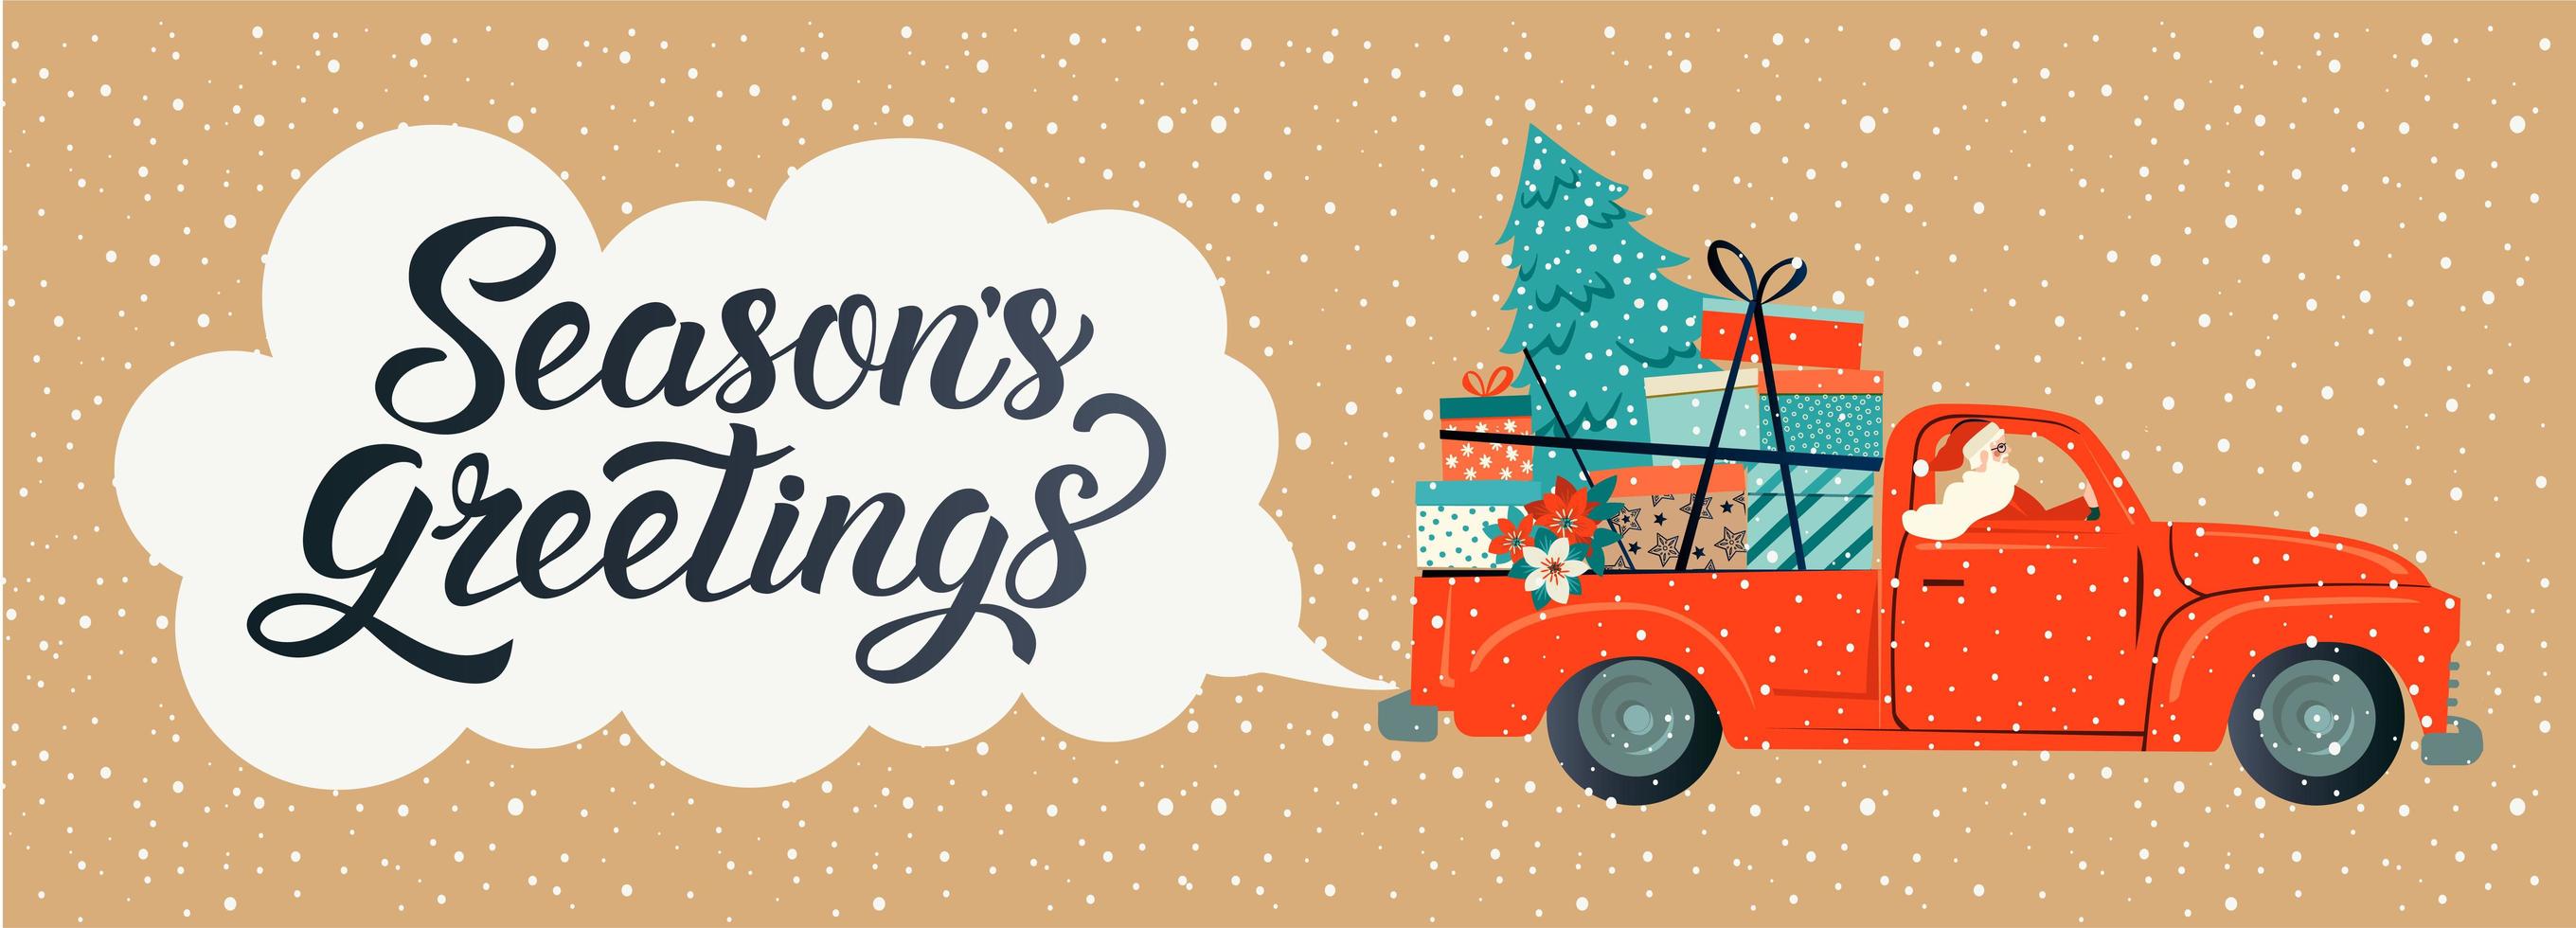 tipografia estilizada de feliz Natal. carro vermelho vintage com Papai Noel, árvore de Natal e caixas de presente. ilustração em vetor estilo simples.